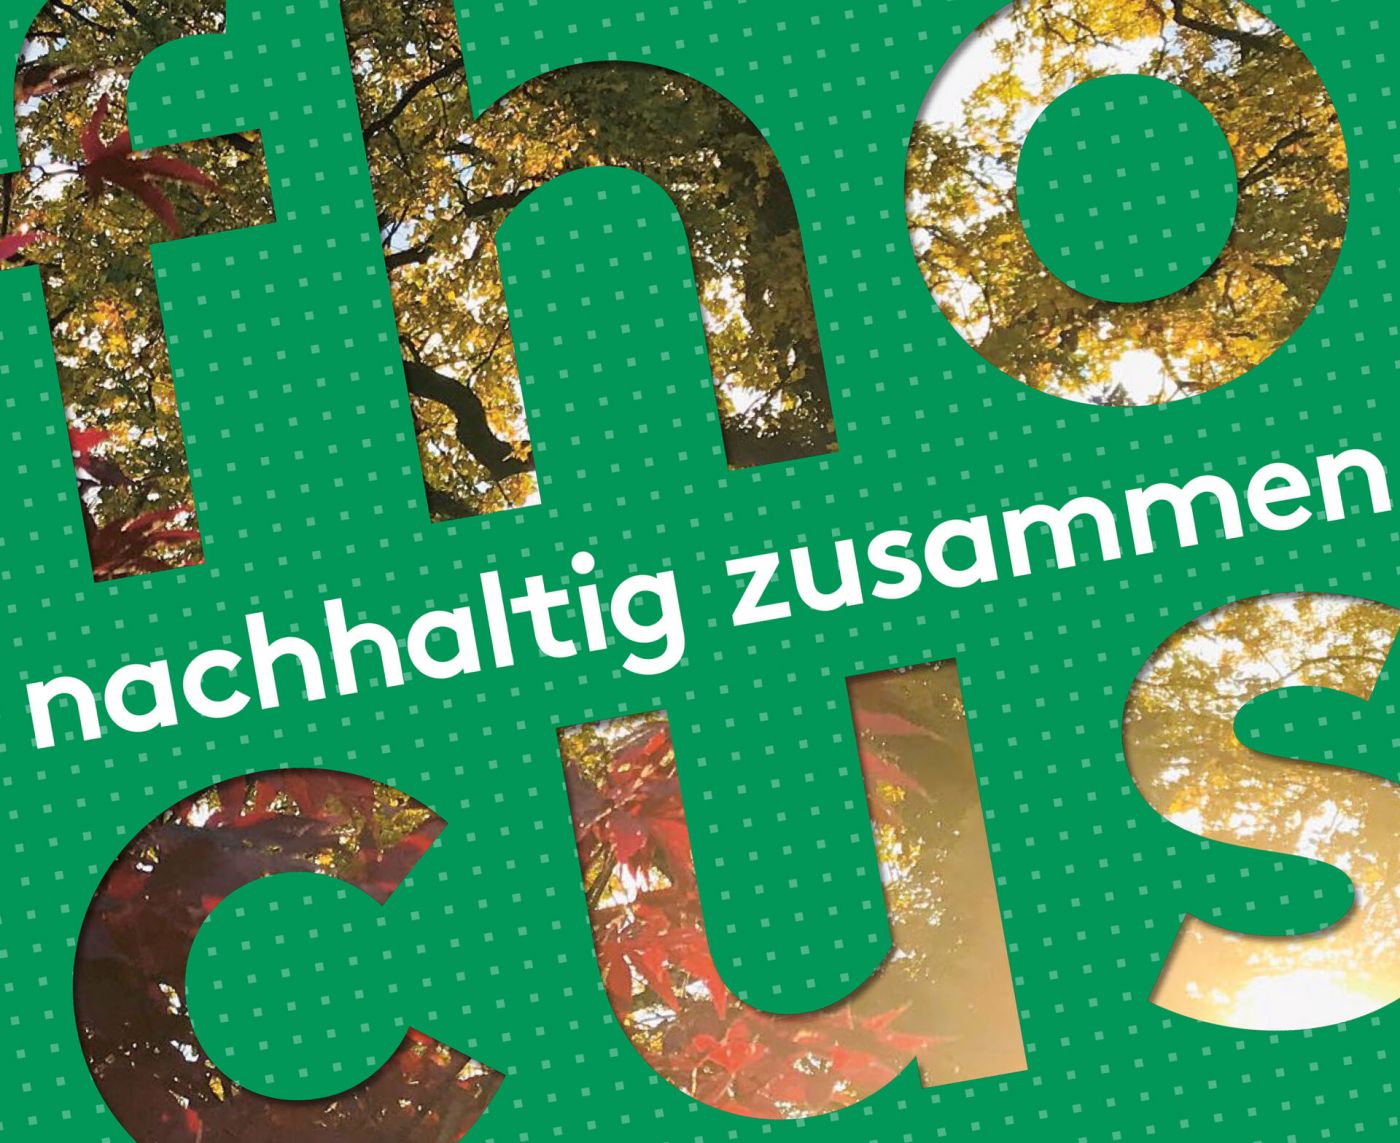 cover der fhocus Nr 40  (Foto: Gestaltung Titelseite: Designagentur goldmarie, Fotoausschnitt: Pressestelle/Anne Holtkötter)